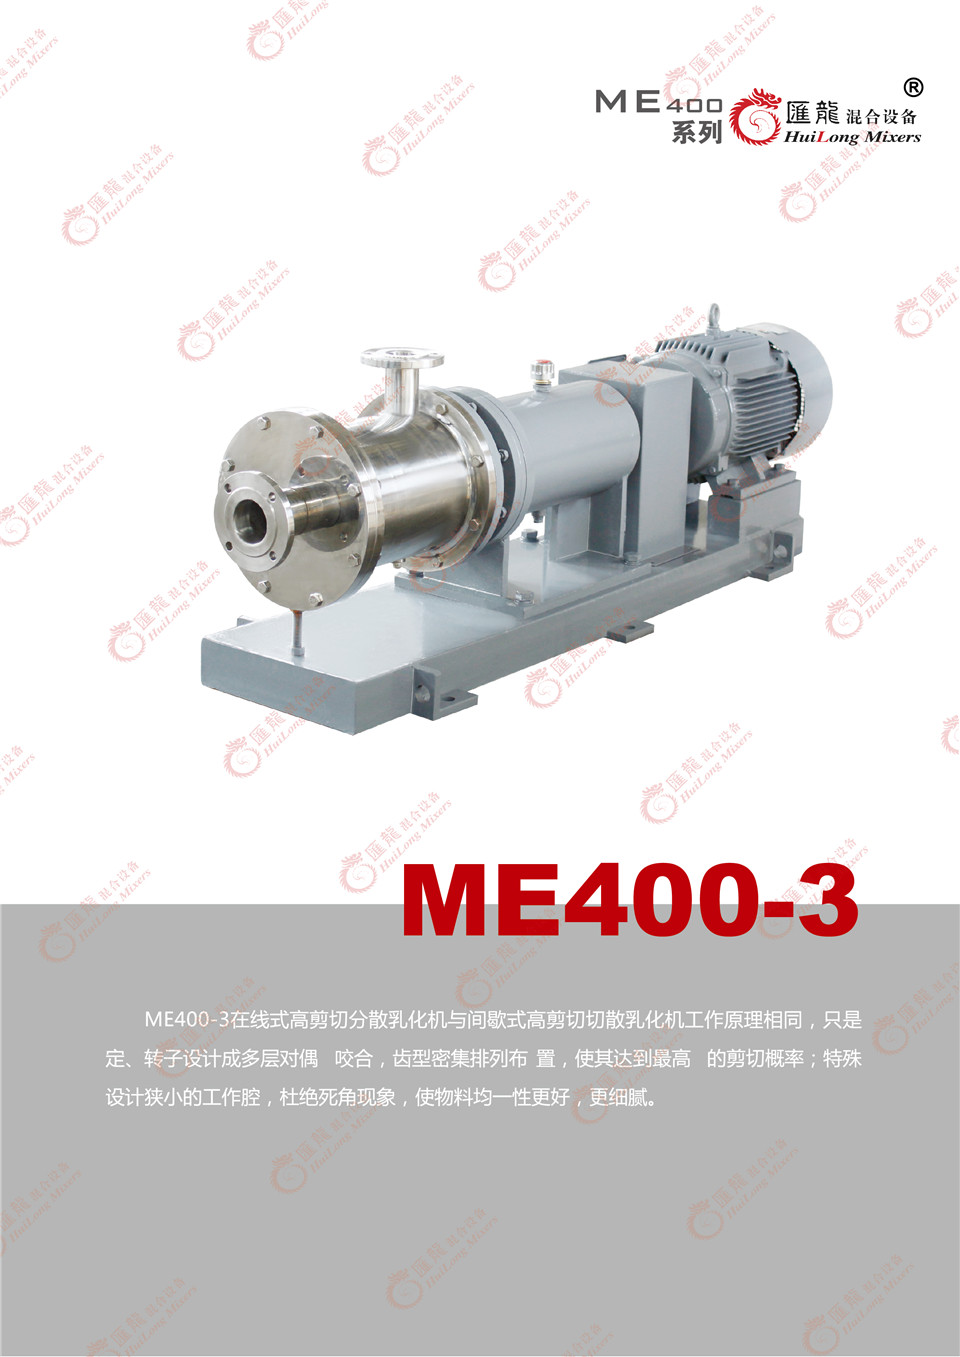 “ME400C-1型乳化机”/